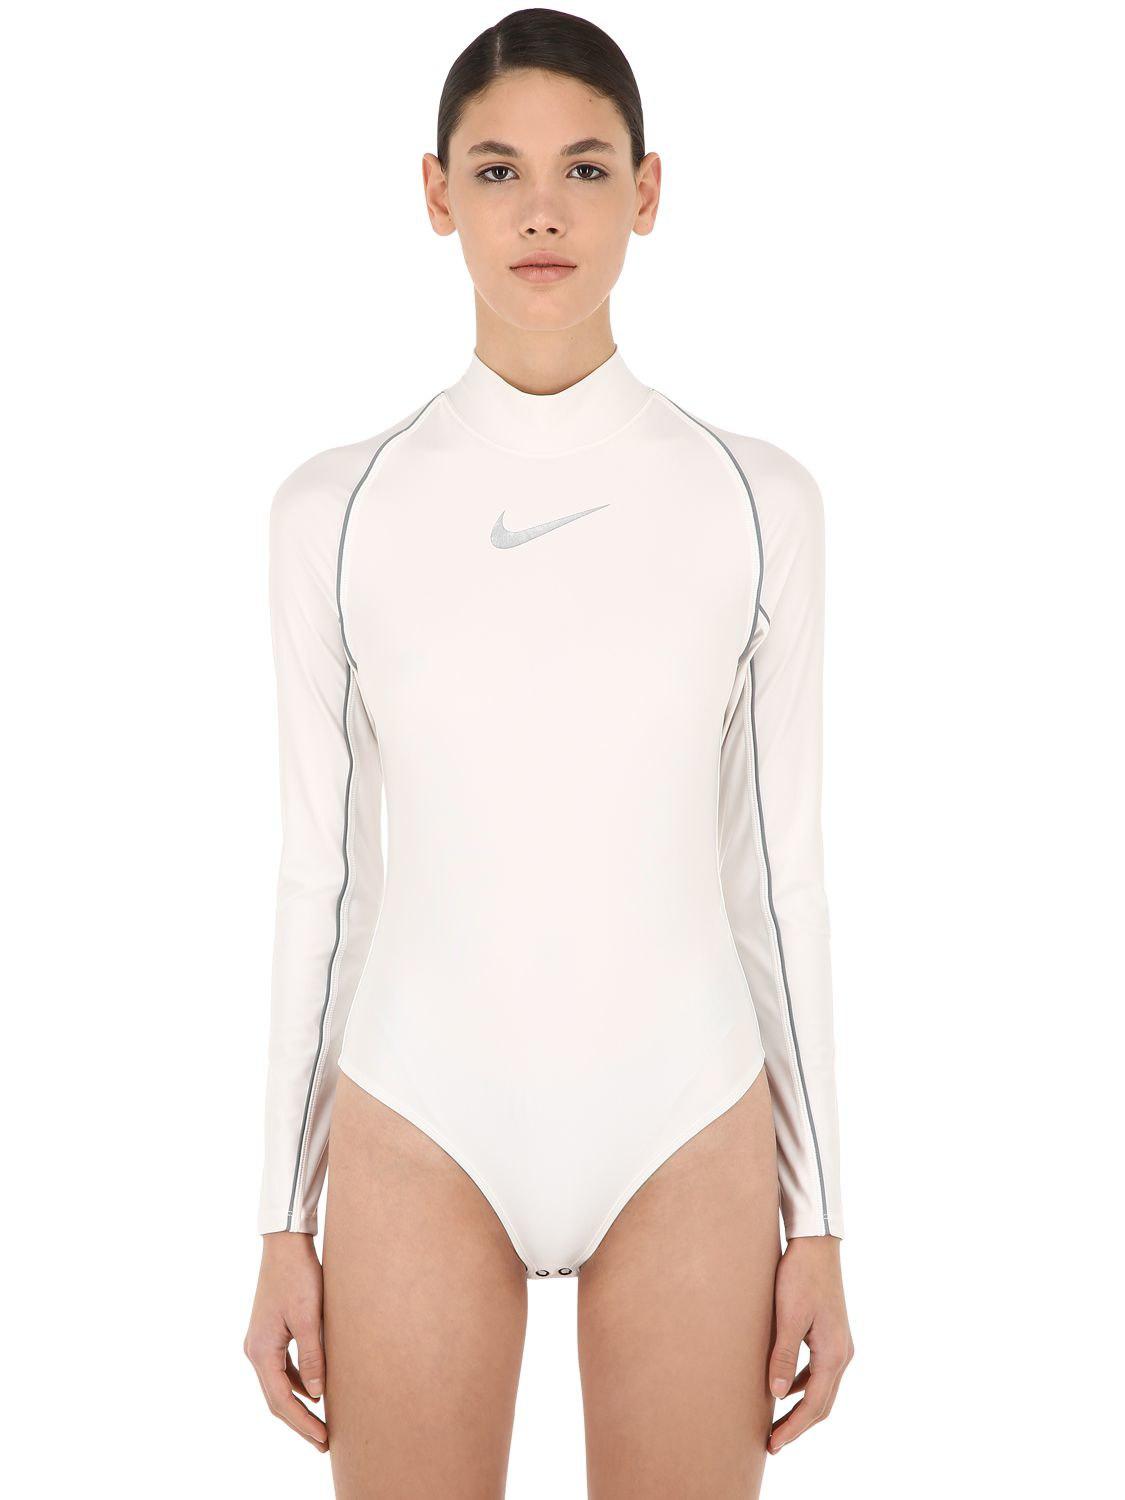 Nike Nrg Ca Ambush Bodysuit in White | Lyst Australia